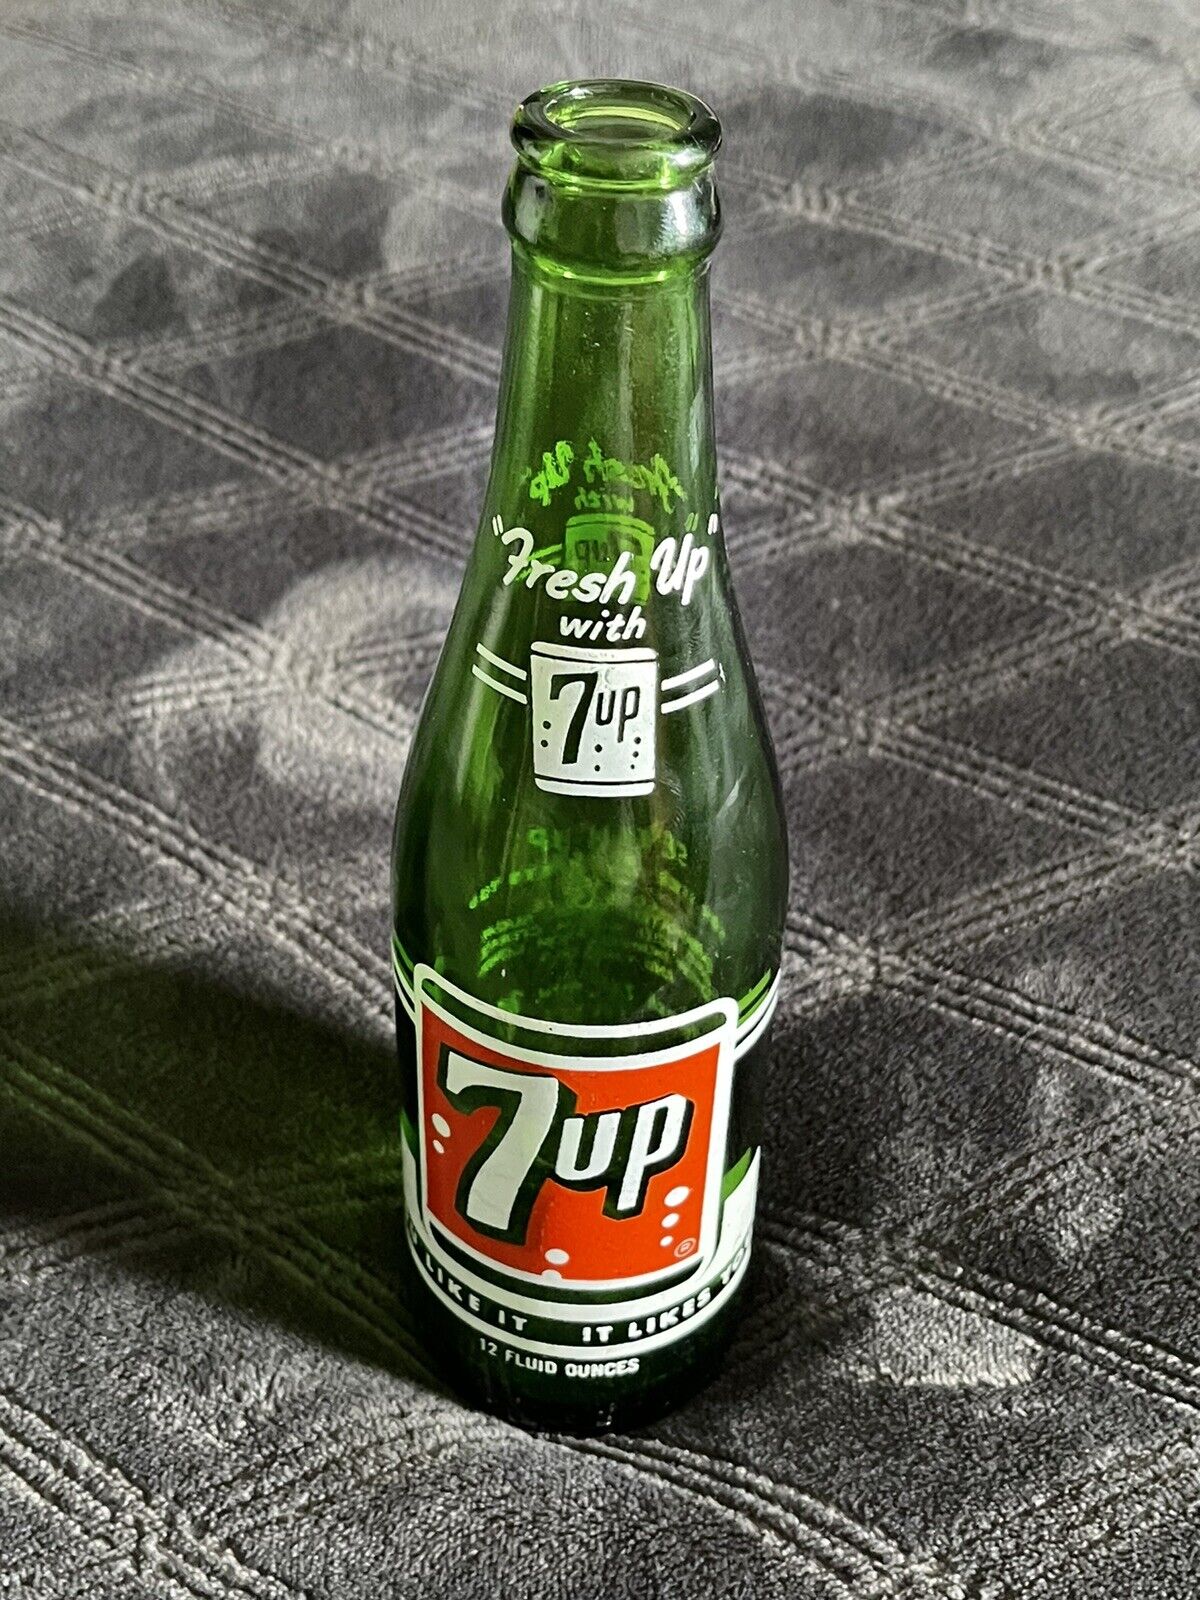 1968 7up Beverages Soda Pop Collector Vintage Green Glass Bottle 7 Up